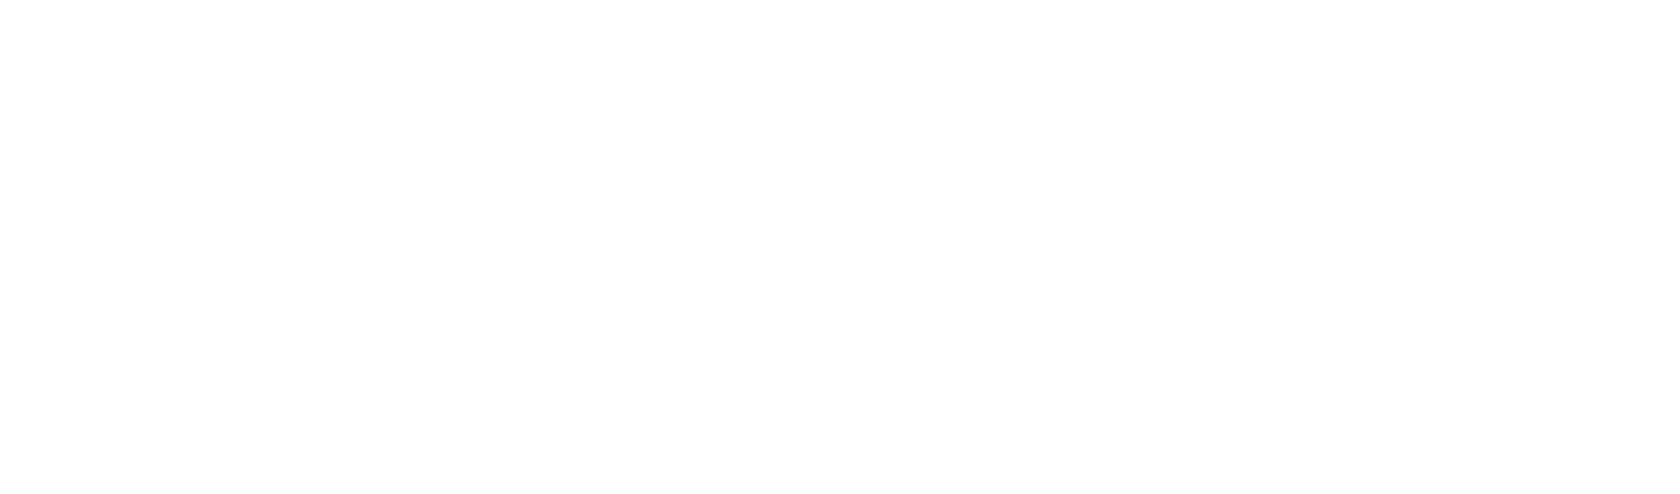  Tazmar Maritime 